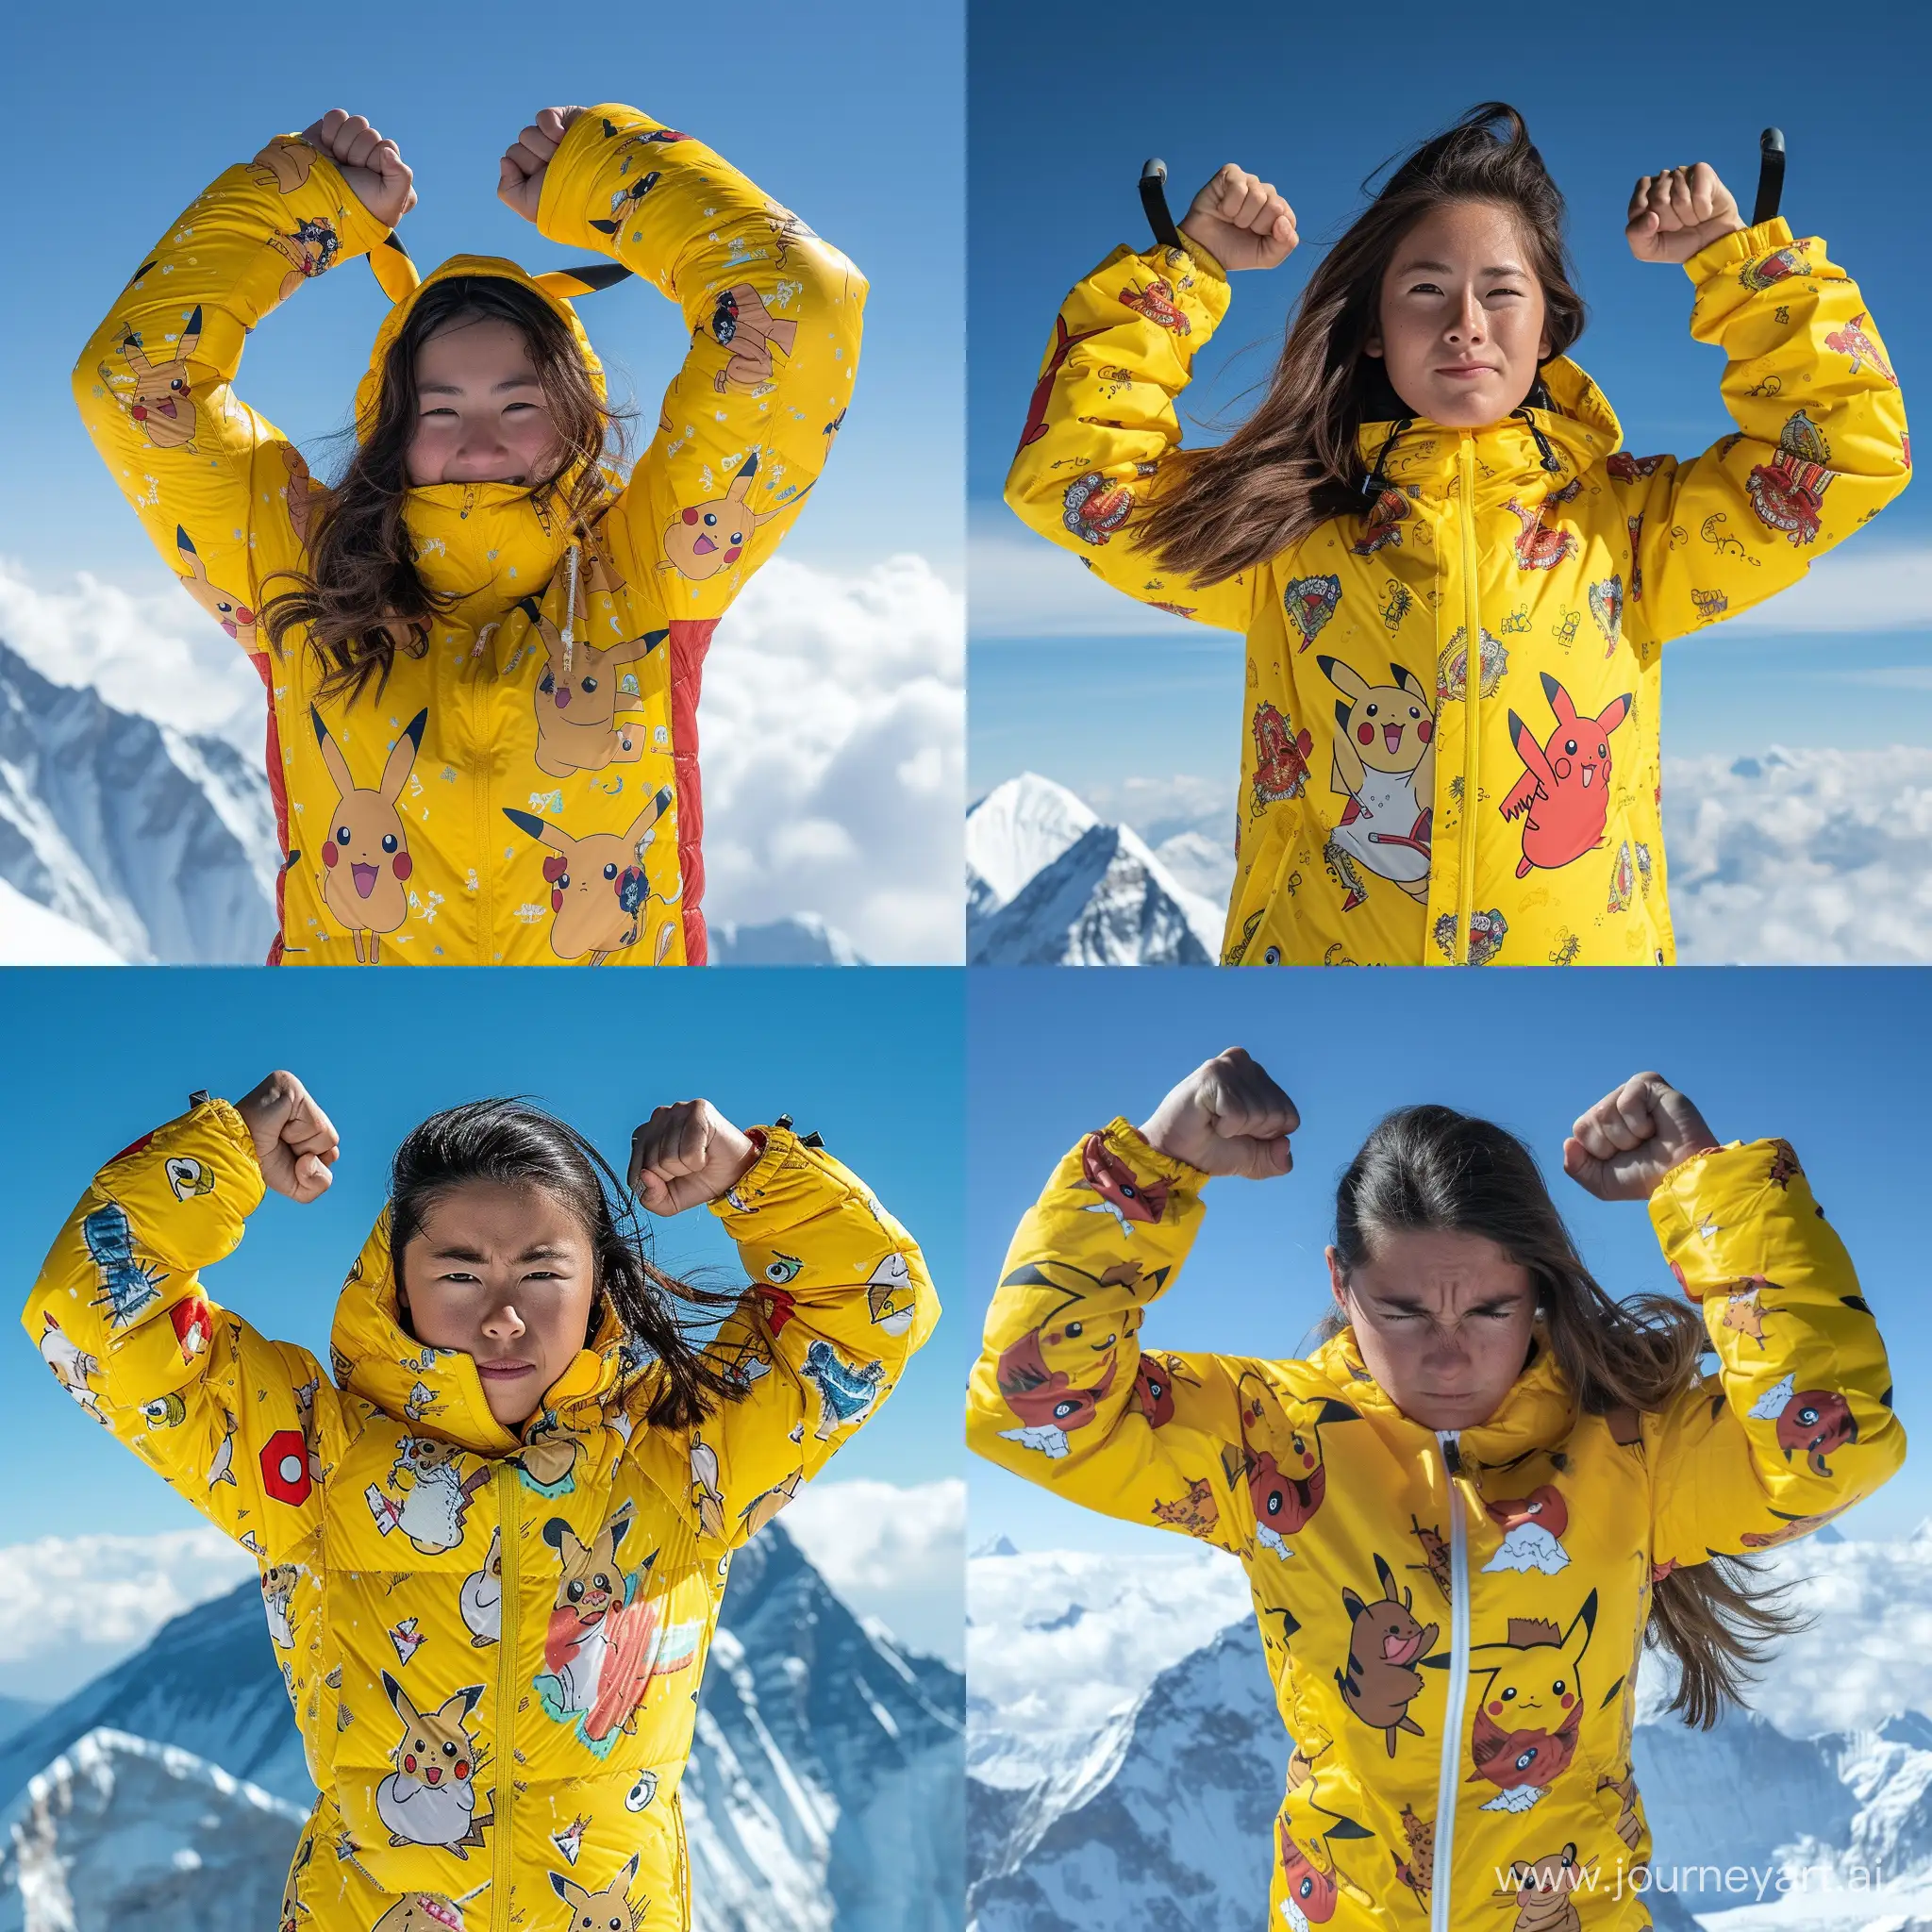 девушка жмет сто килограмм на бицепс на вершине горы Эверест в желтой куртке с рисунком пикачу